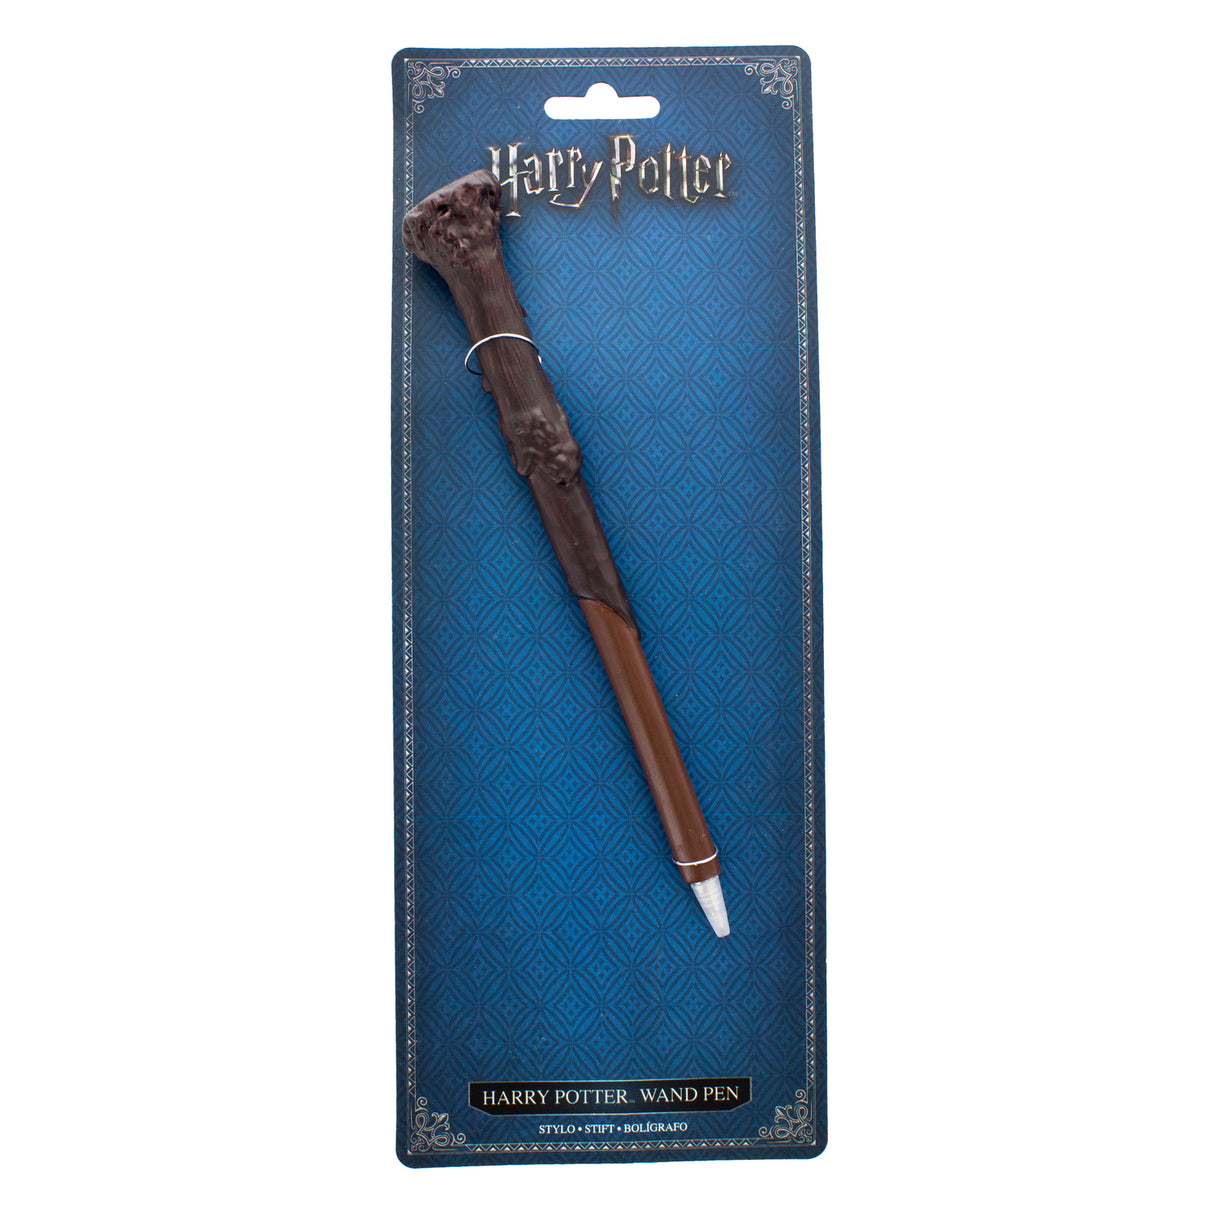 Harry Potter Zauberstab Kugelschreiber: Ein cooles Geschenk - Jetzt kaufen!  –